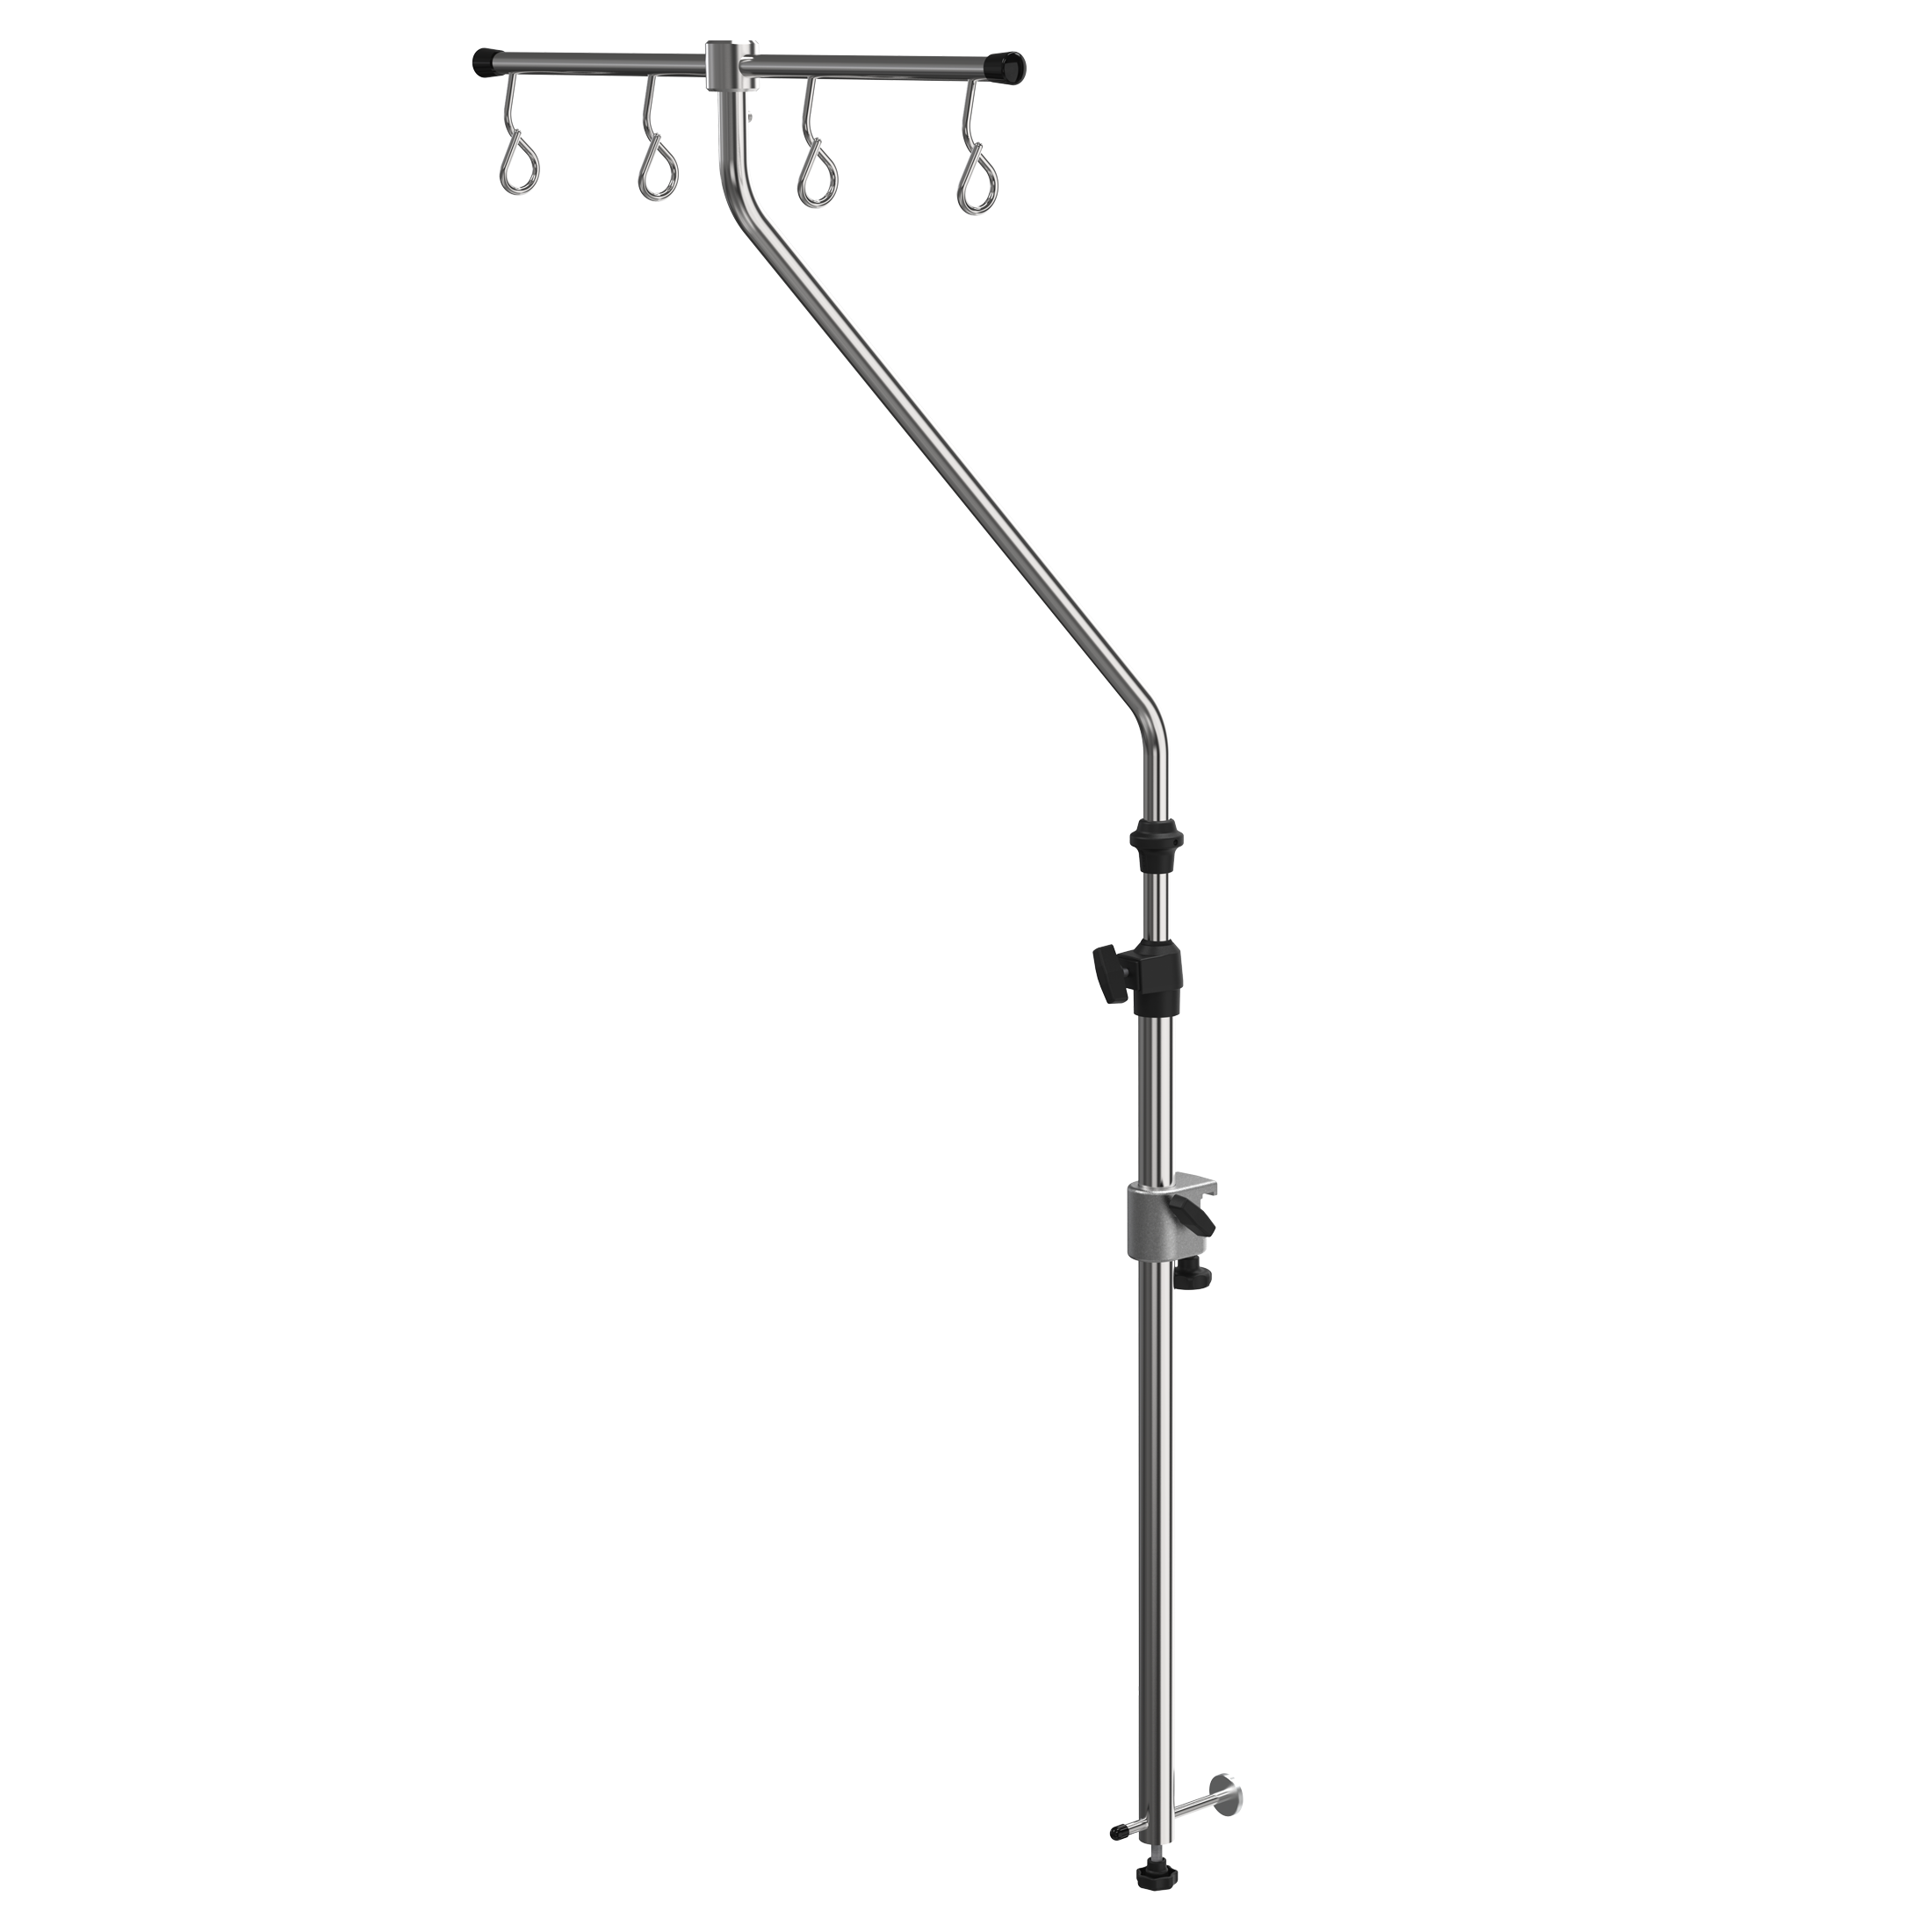 IV-pole (angled) for wall rail